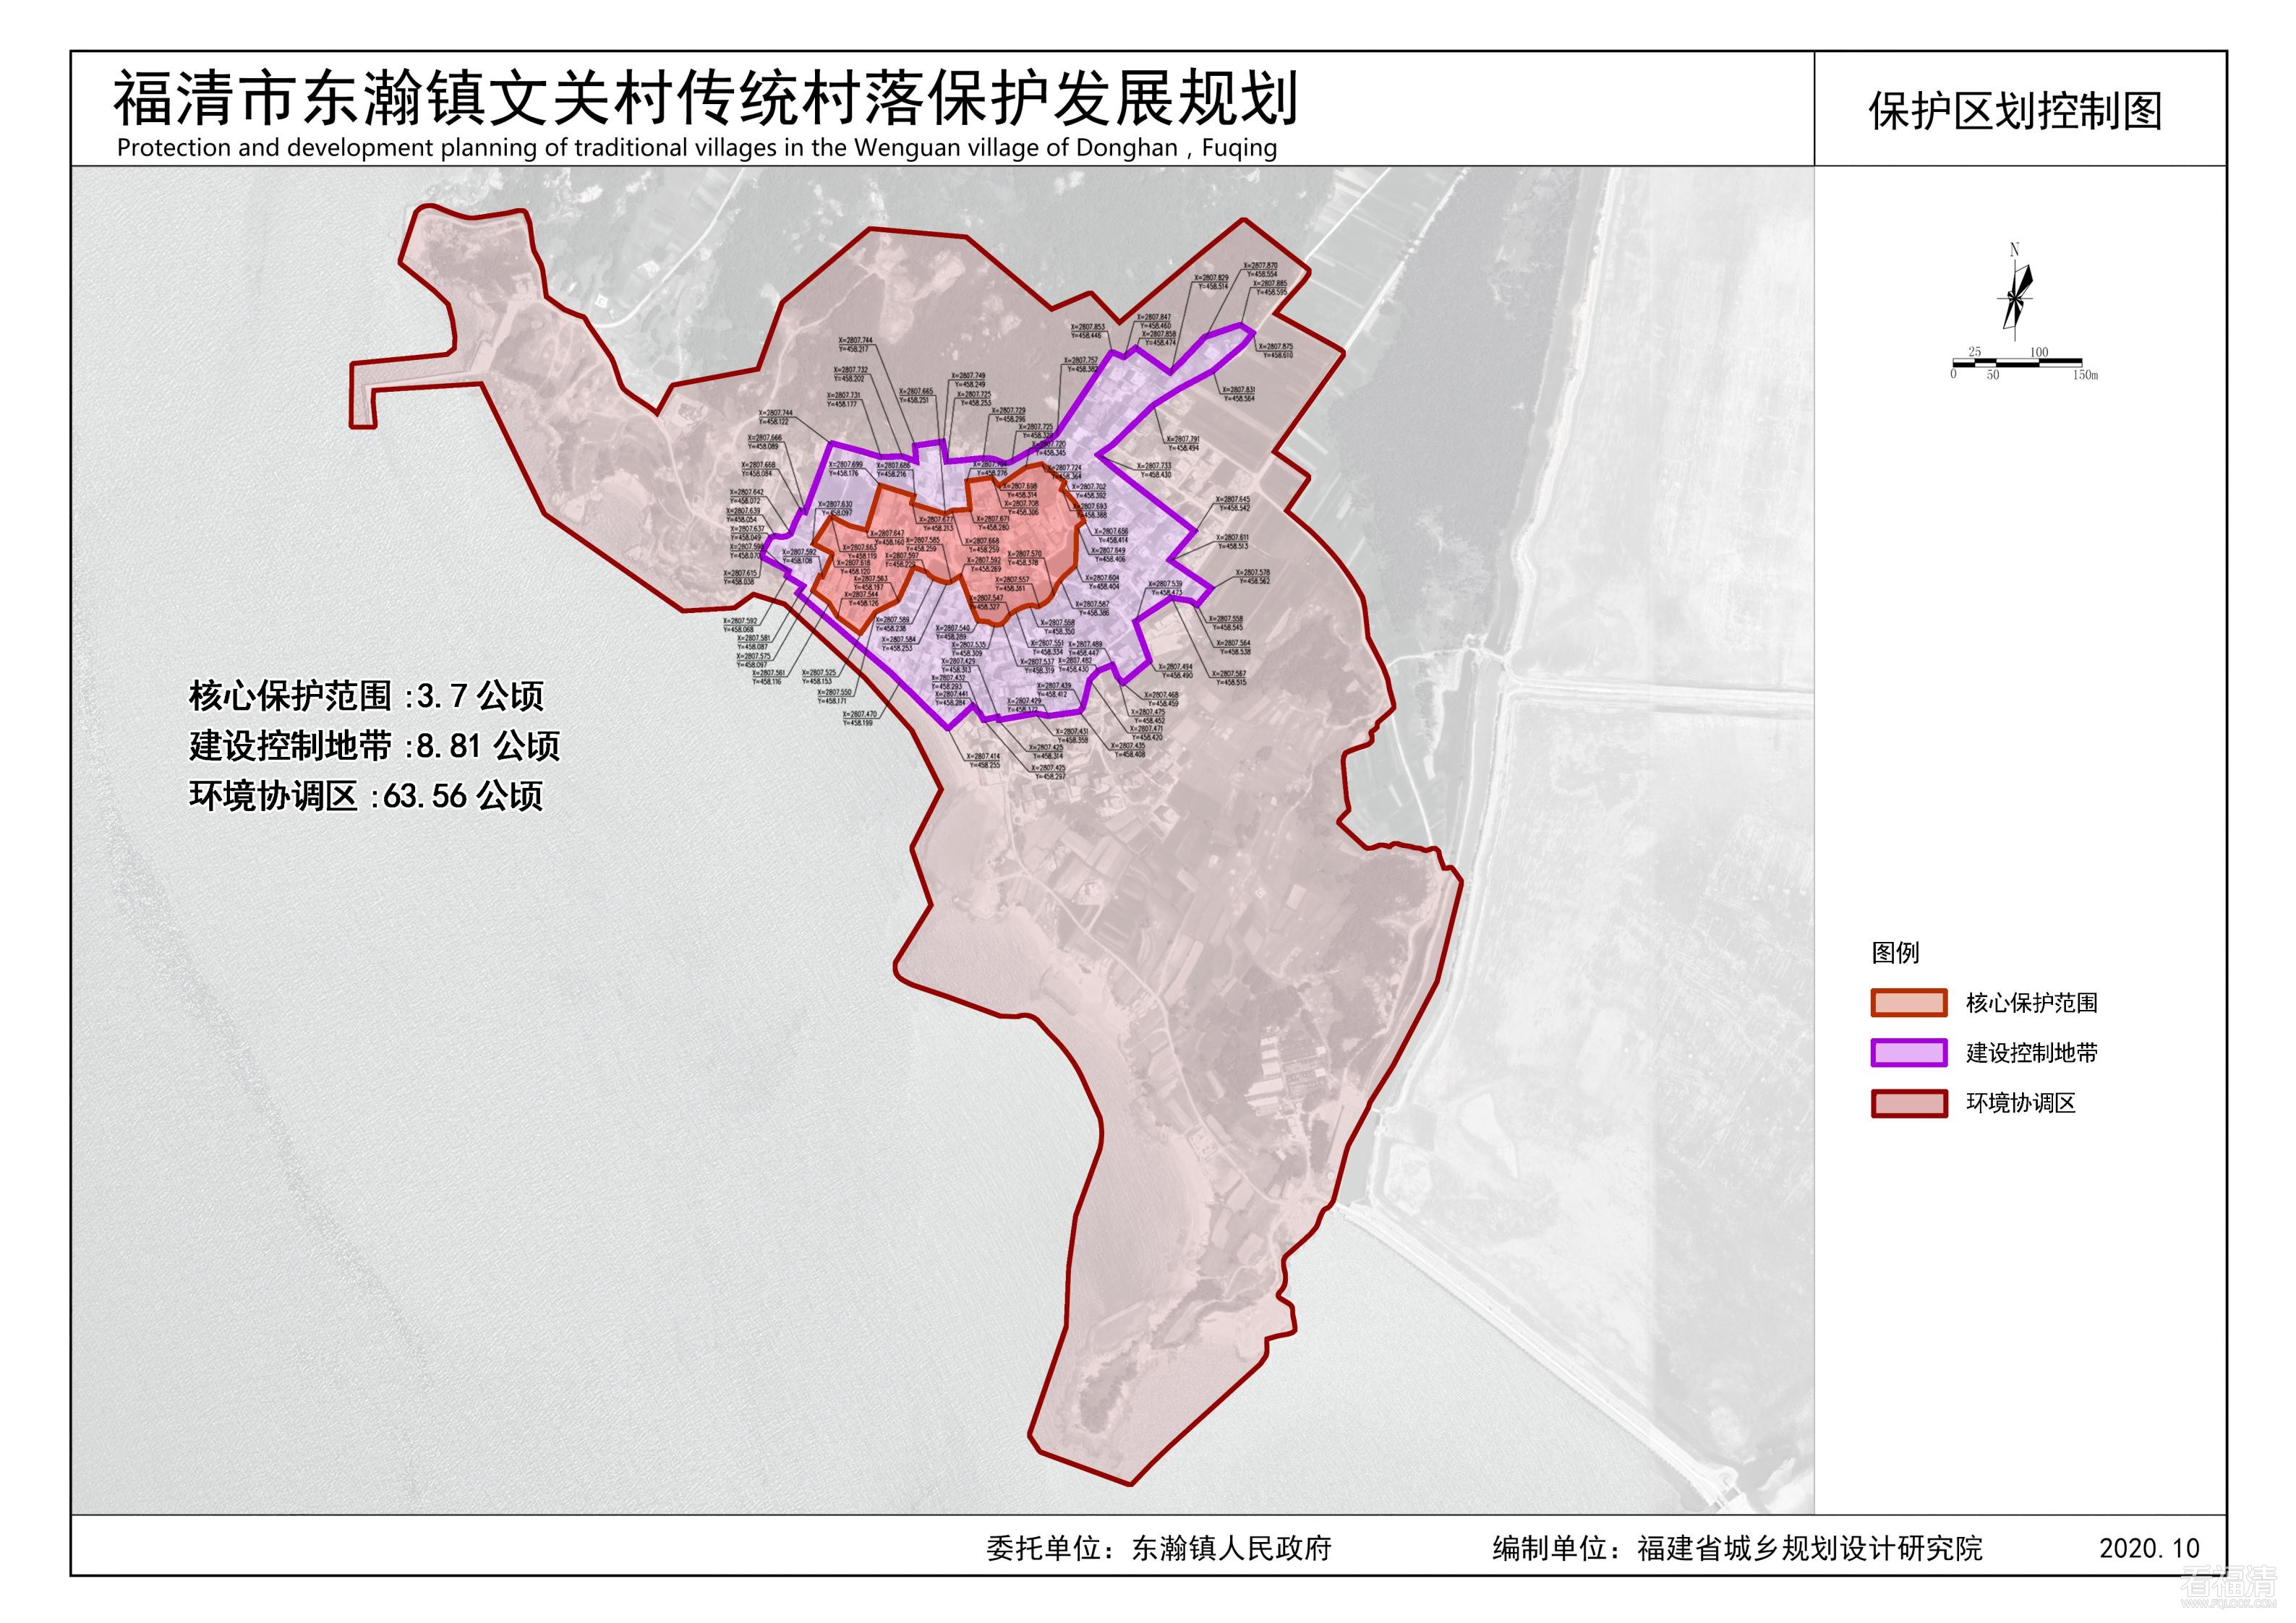 《福清市东瀚镇文关村传统村落保护发展规划（2020-2035年）》_00.jpg